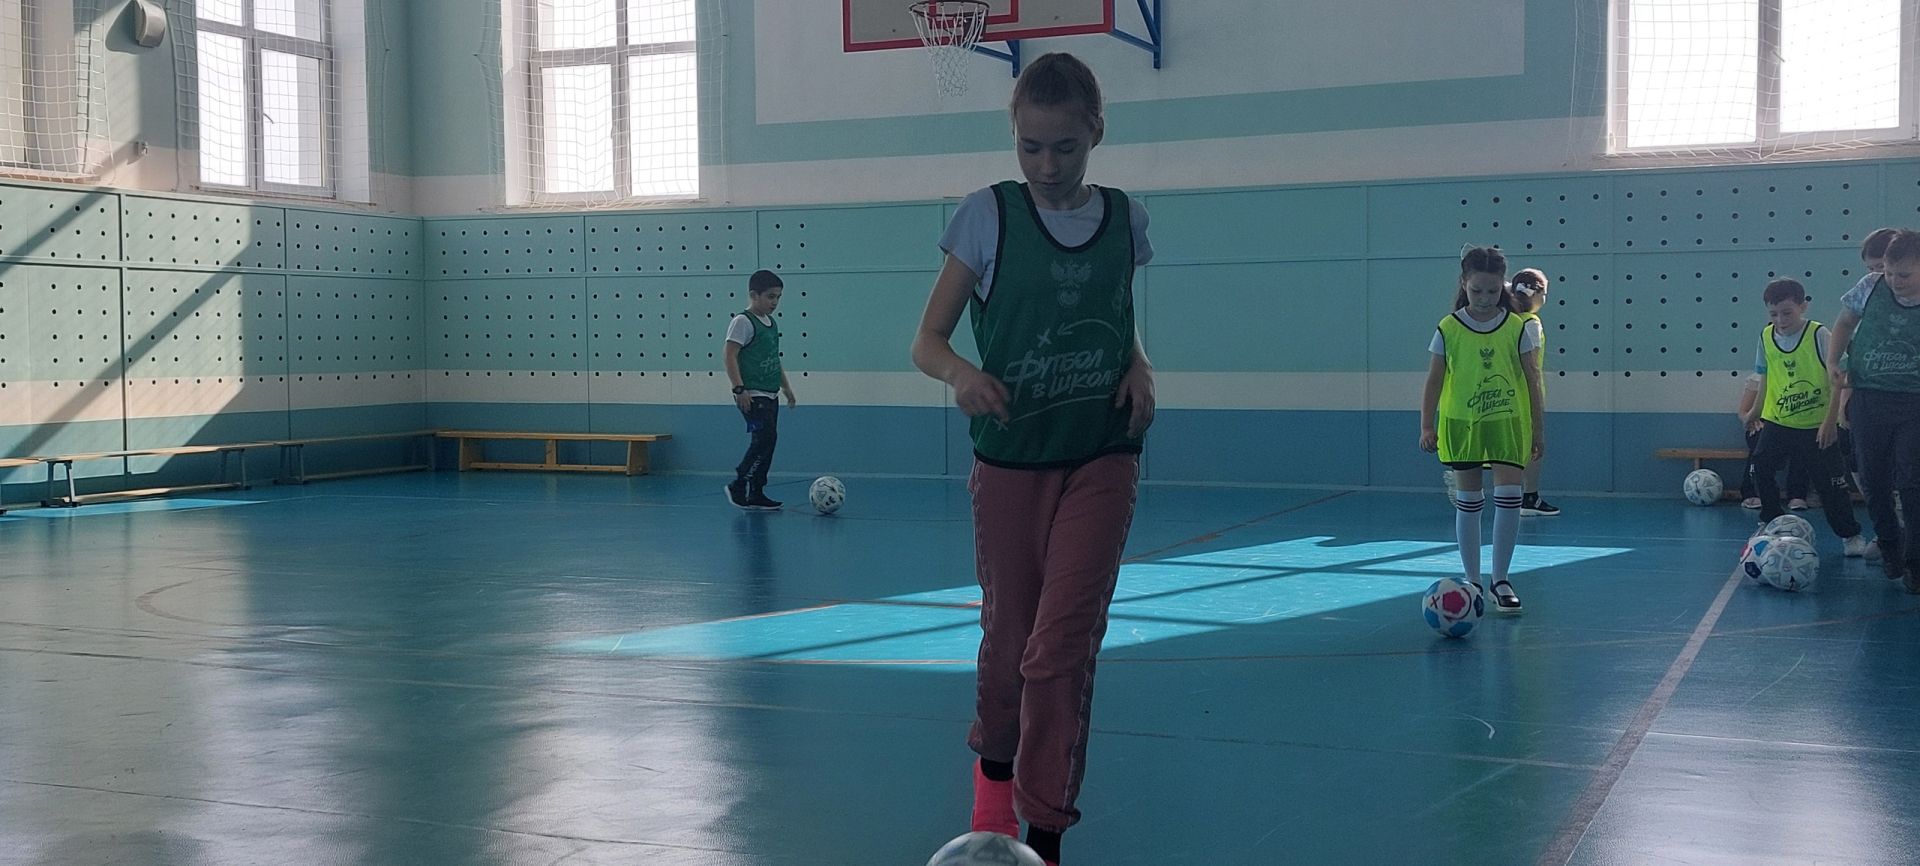 Уруссинские гимназисты успешно реализуют футбольный проект